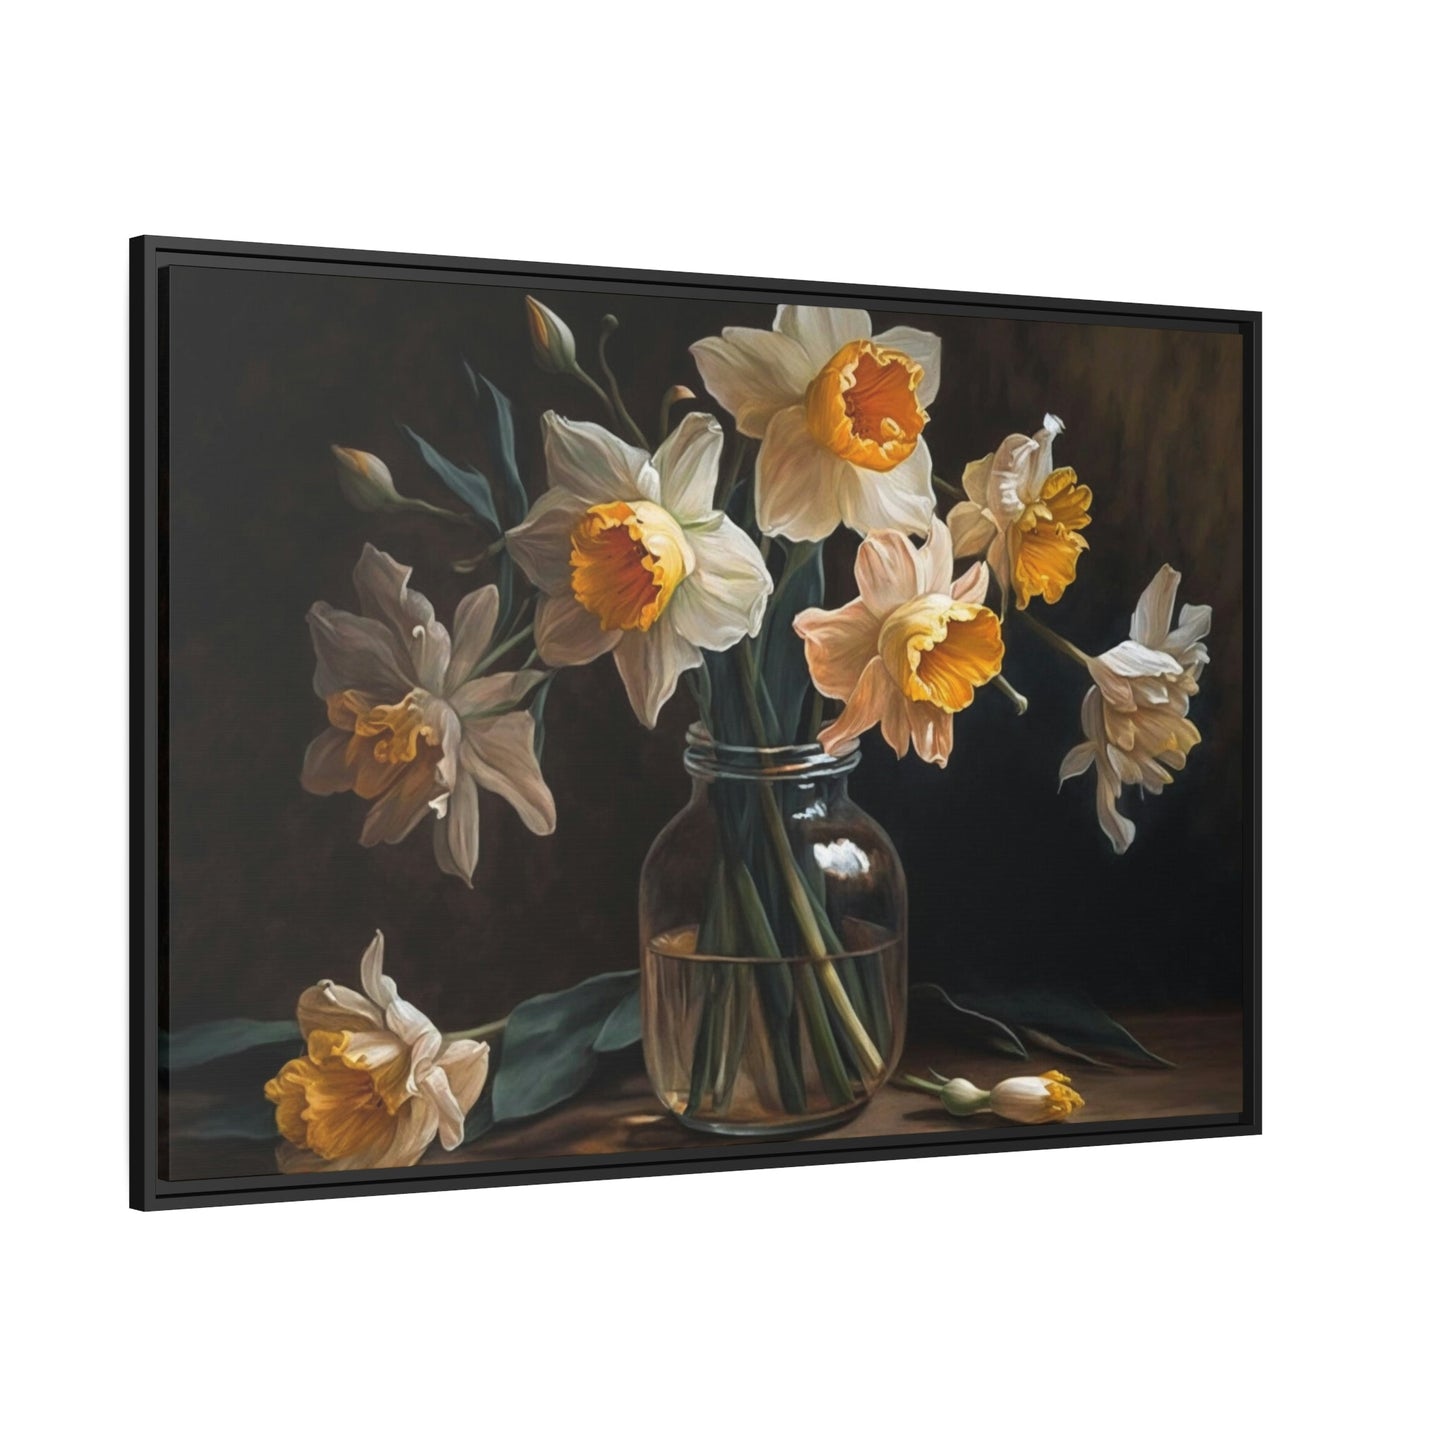 Daffodil Radiance: A Glowing Wonder